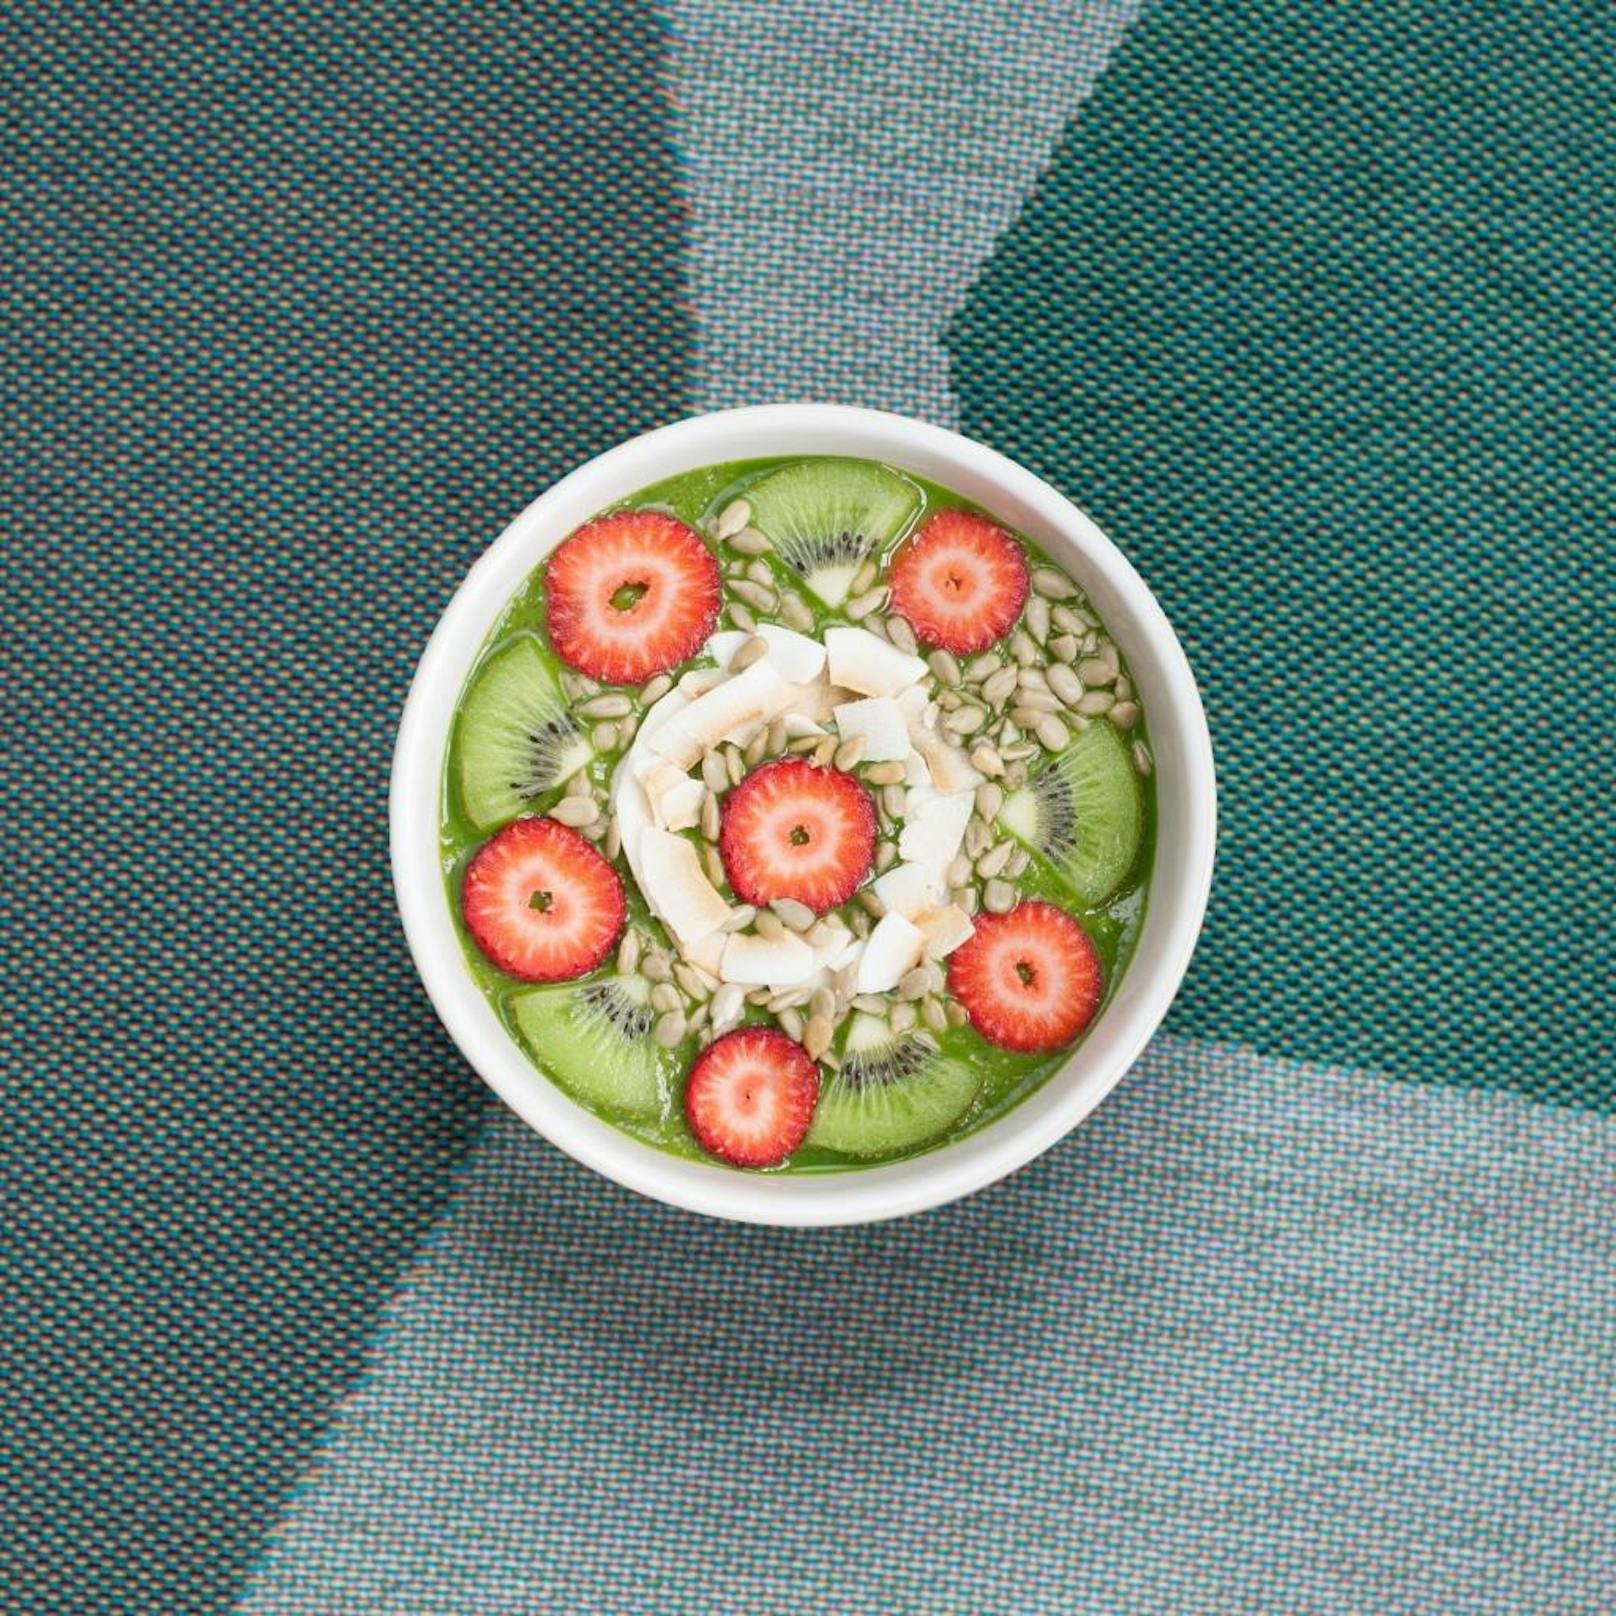 in 3 Farben essen: Grün steht für entzündungshemmende Inhaltsstoffe, gelbes und oranges Gemüse und Obst schützt vor Oxidation und blaue und violette Arten die Gefäße.